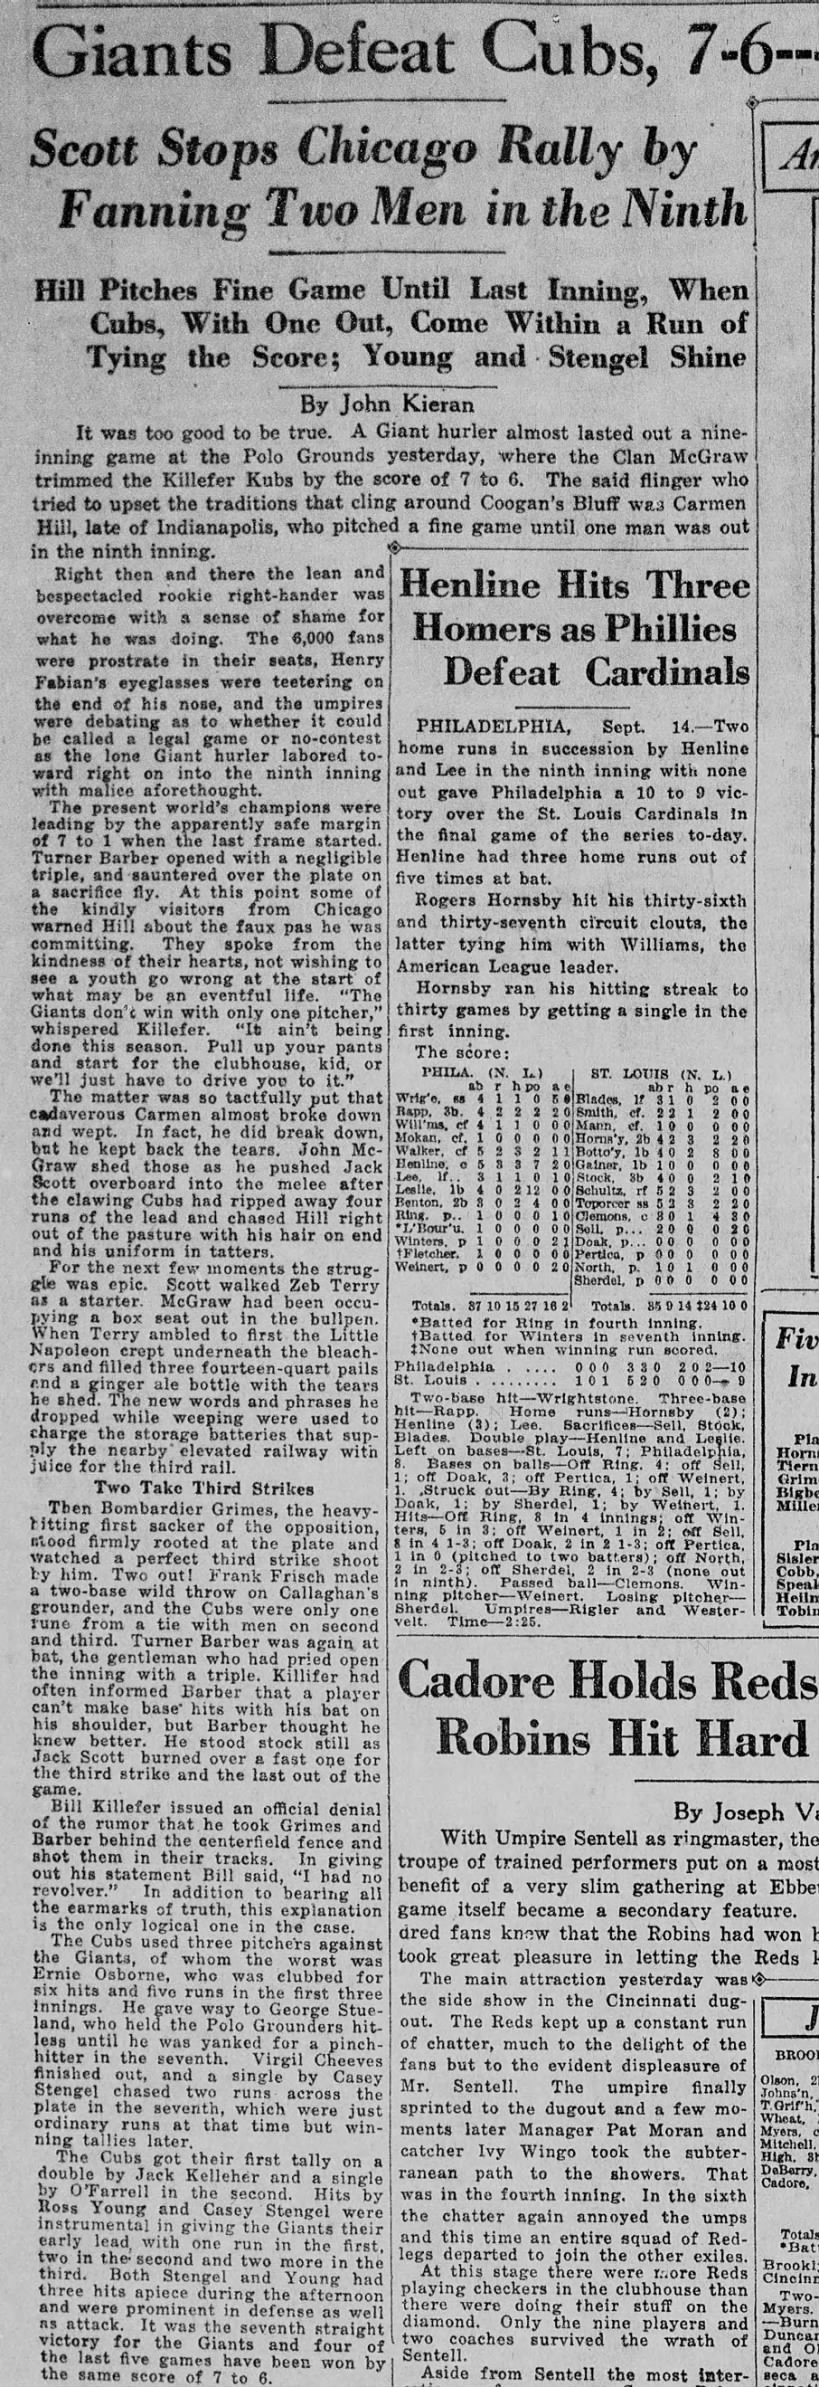 New York Tribune September 16 1922